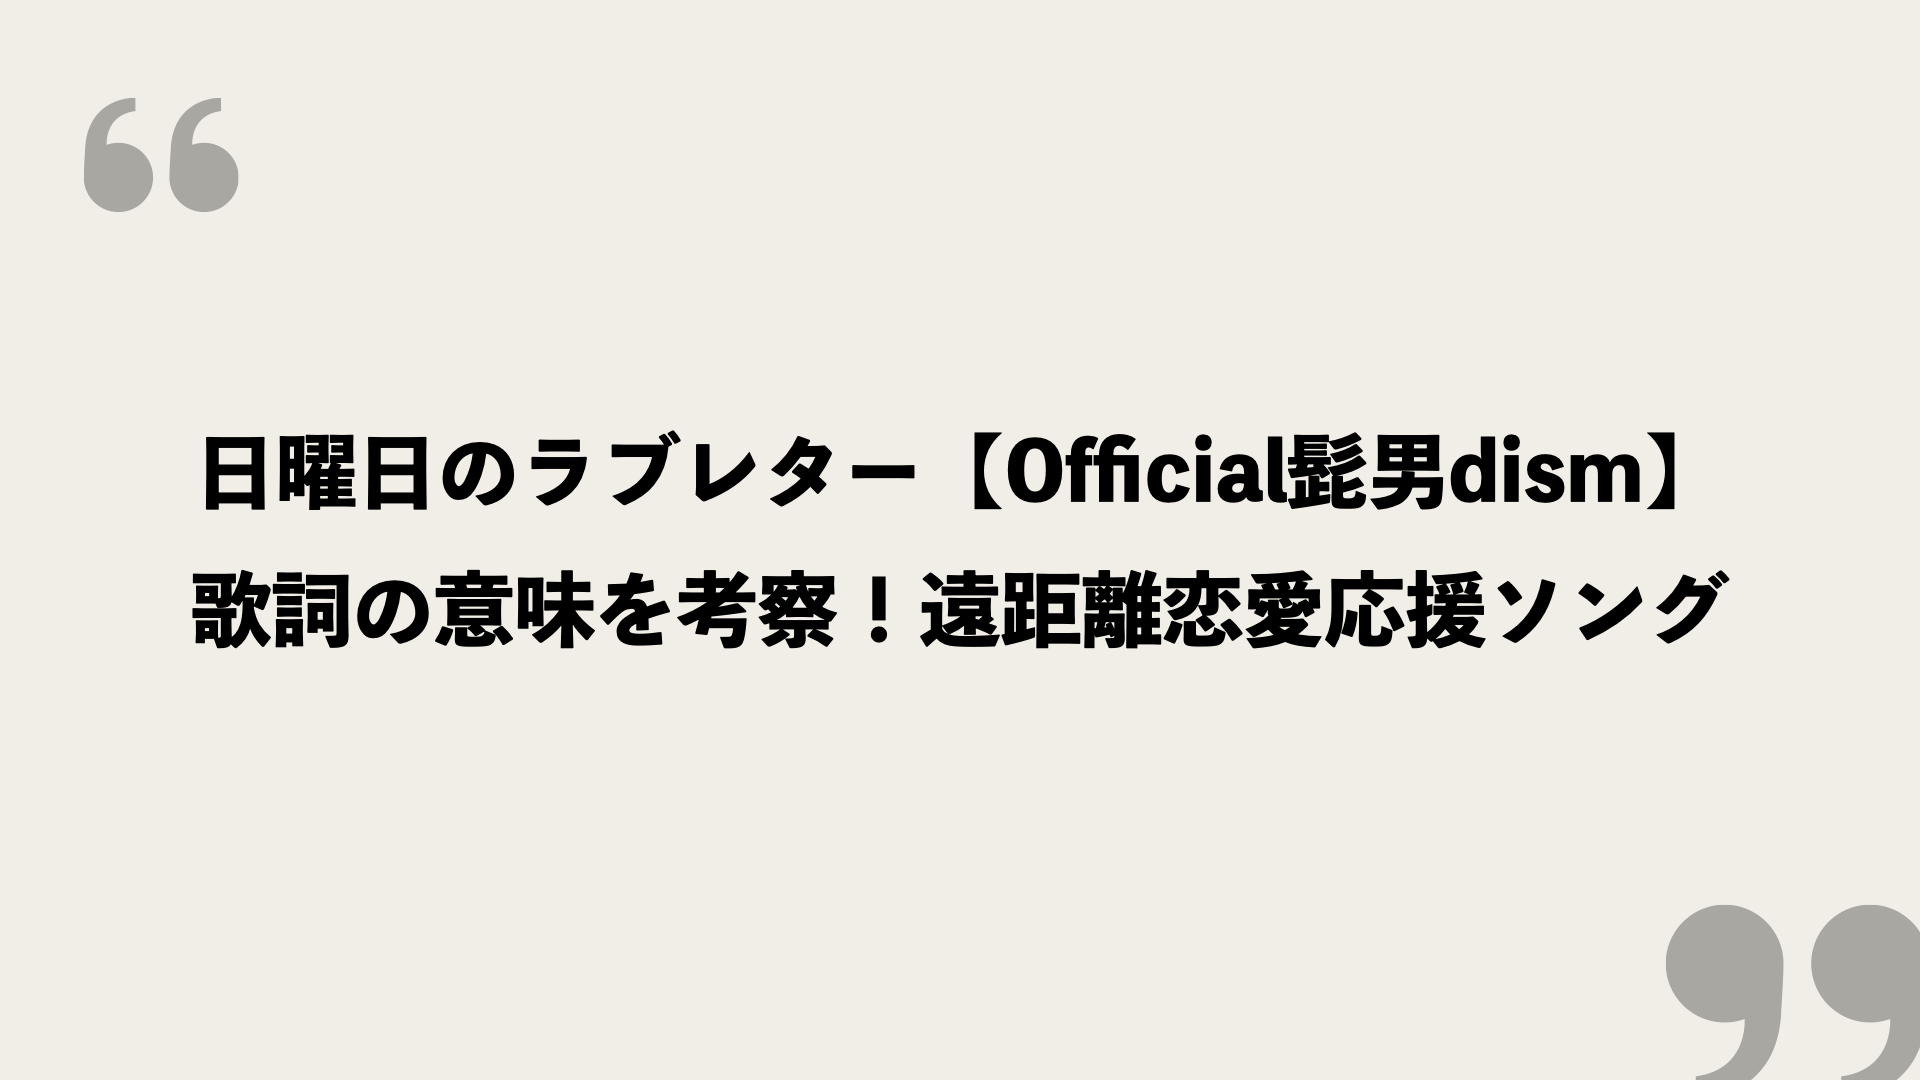 日曜日のラブレター Official髭男dism 歌詞の意味を考察 遠距離恋愛応援ソング Framu Media